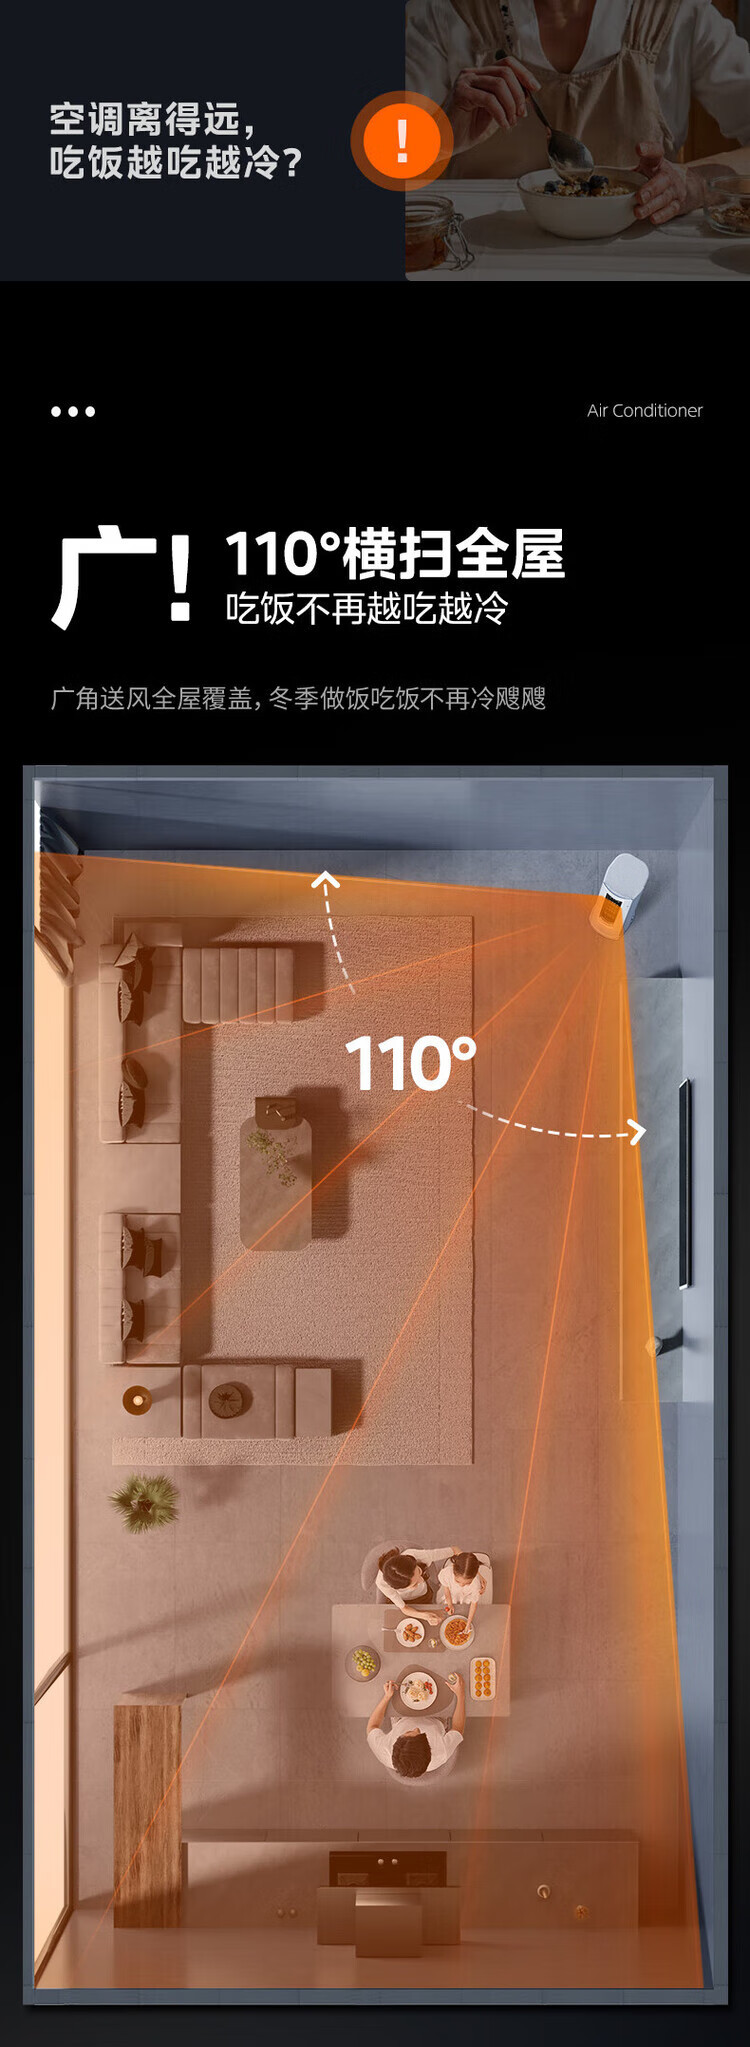 美的/MIDEA 空调静优风2匹/3匹柜机变频空调一级能效冷暖立式柜机客厅